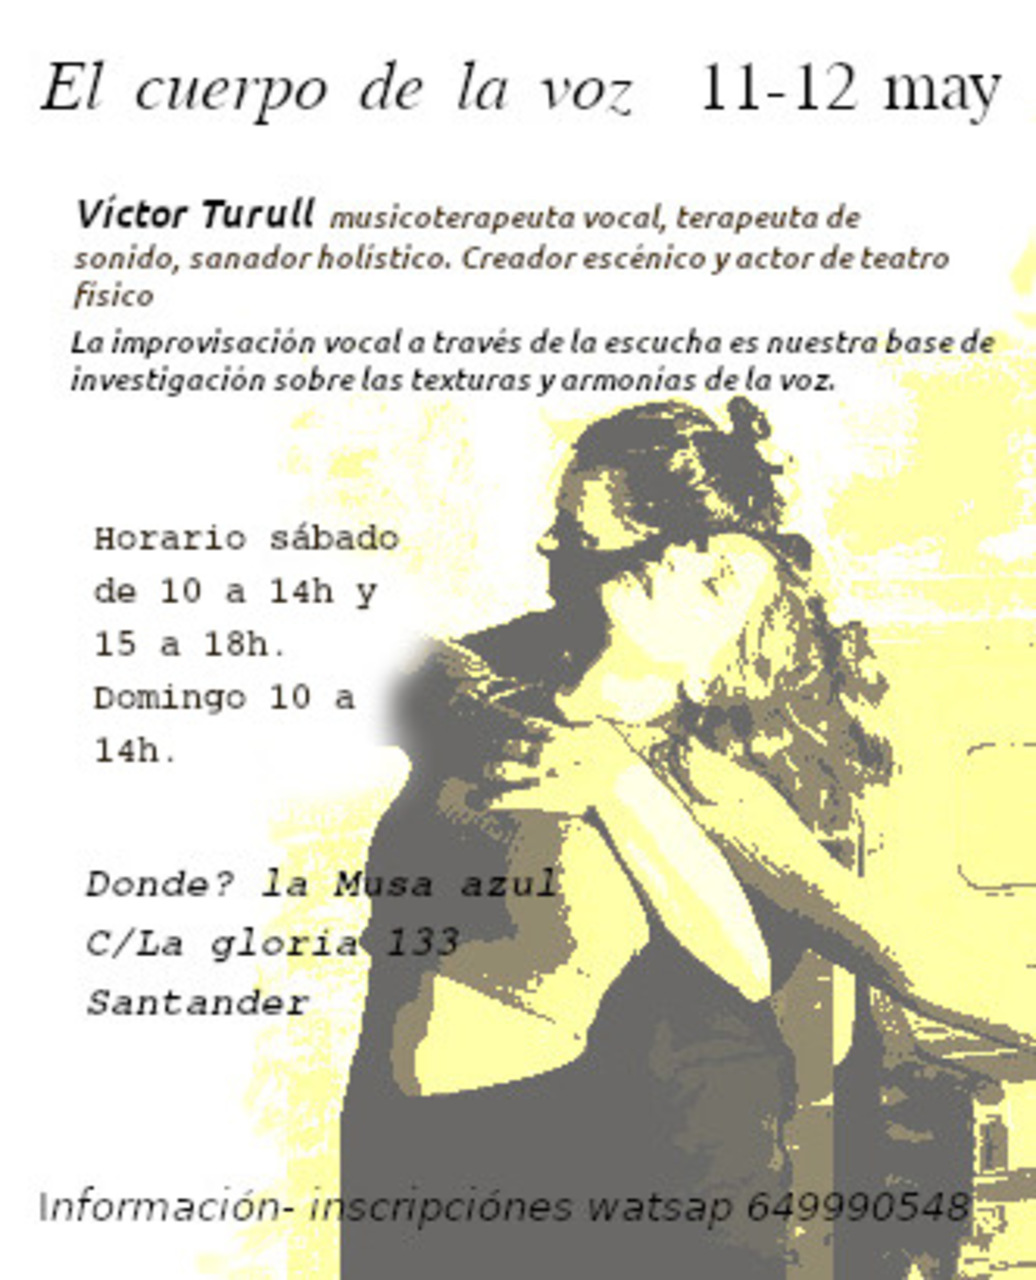 Taller de voz " El cuerpo de la voz", con Víctor Turull